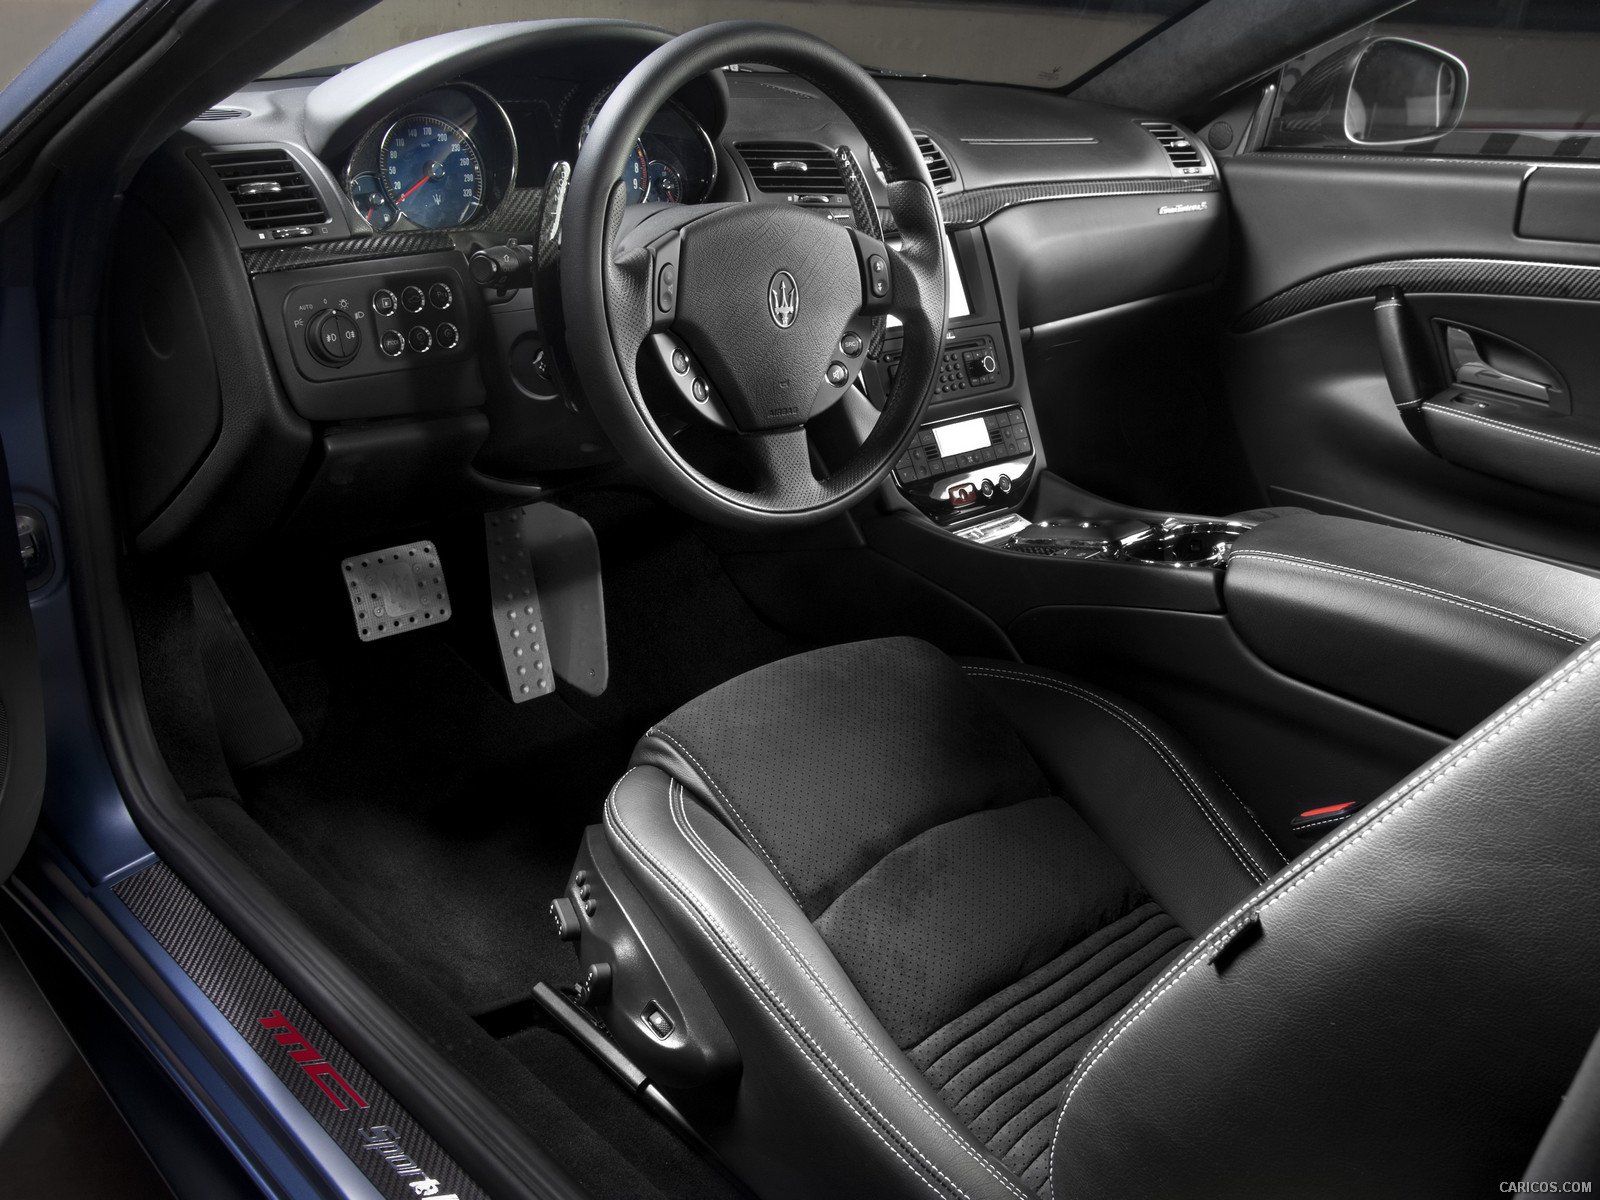 2012 Maserati GranTurismo S Limited Edition  - Interior, #2 of 7